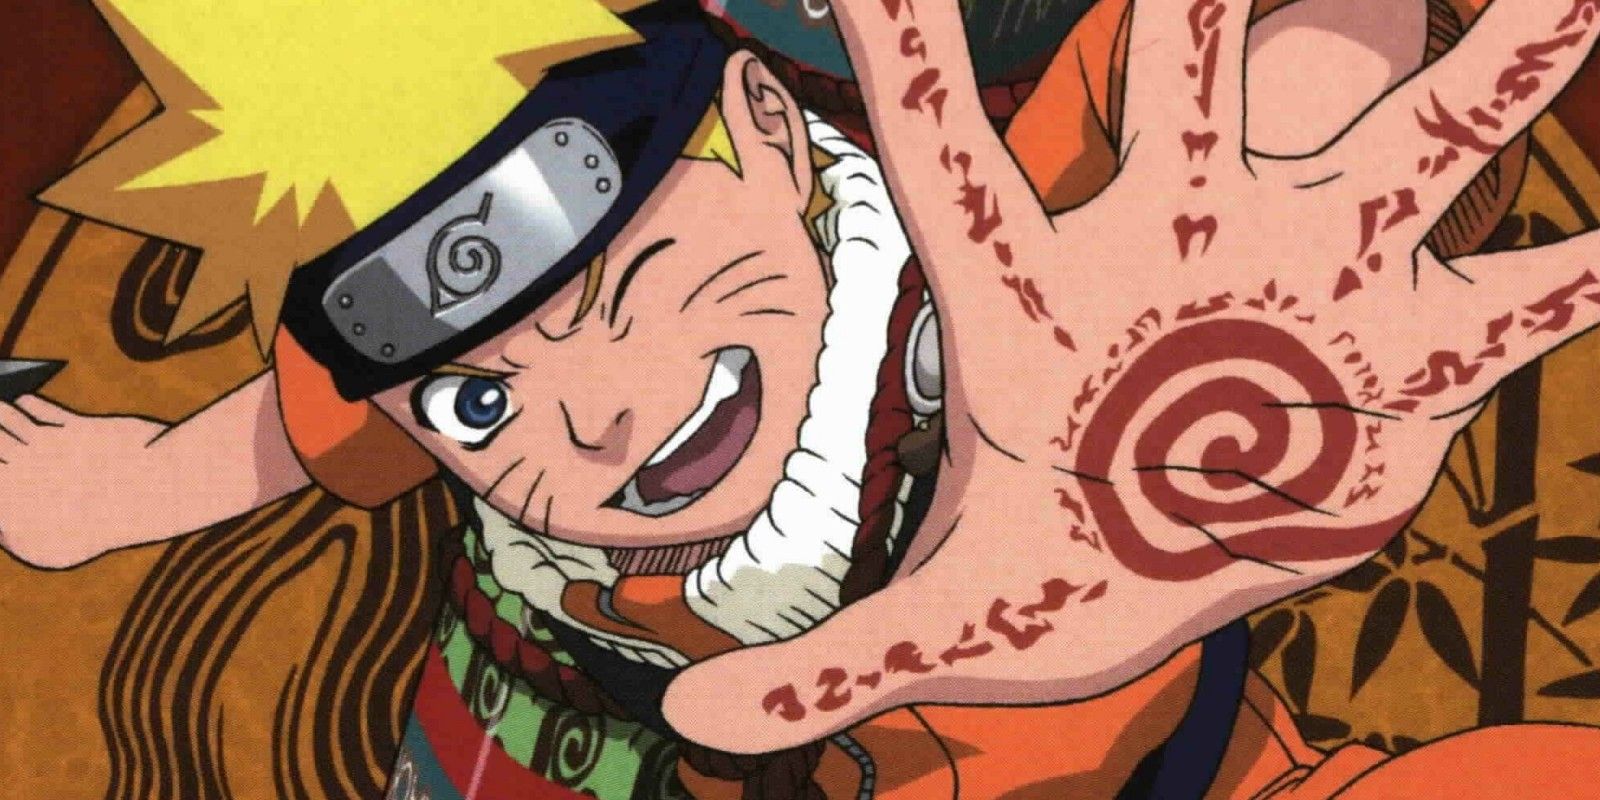 Naruto Uzumaki posing for a picture in Naruto.